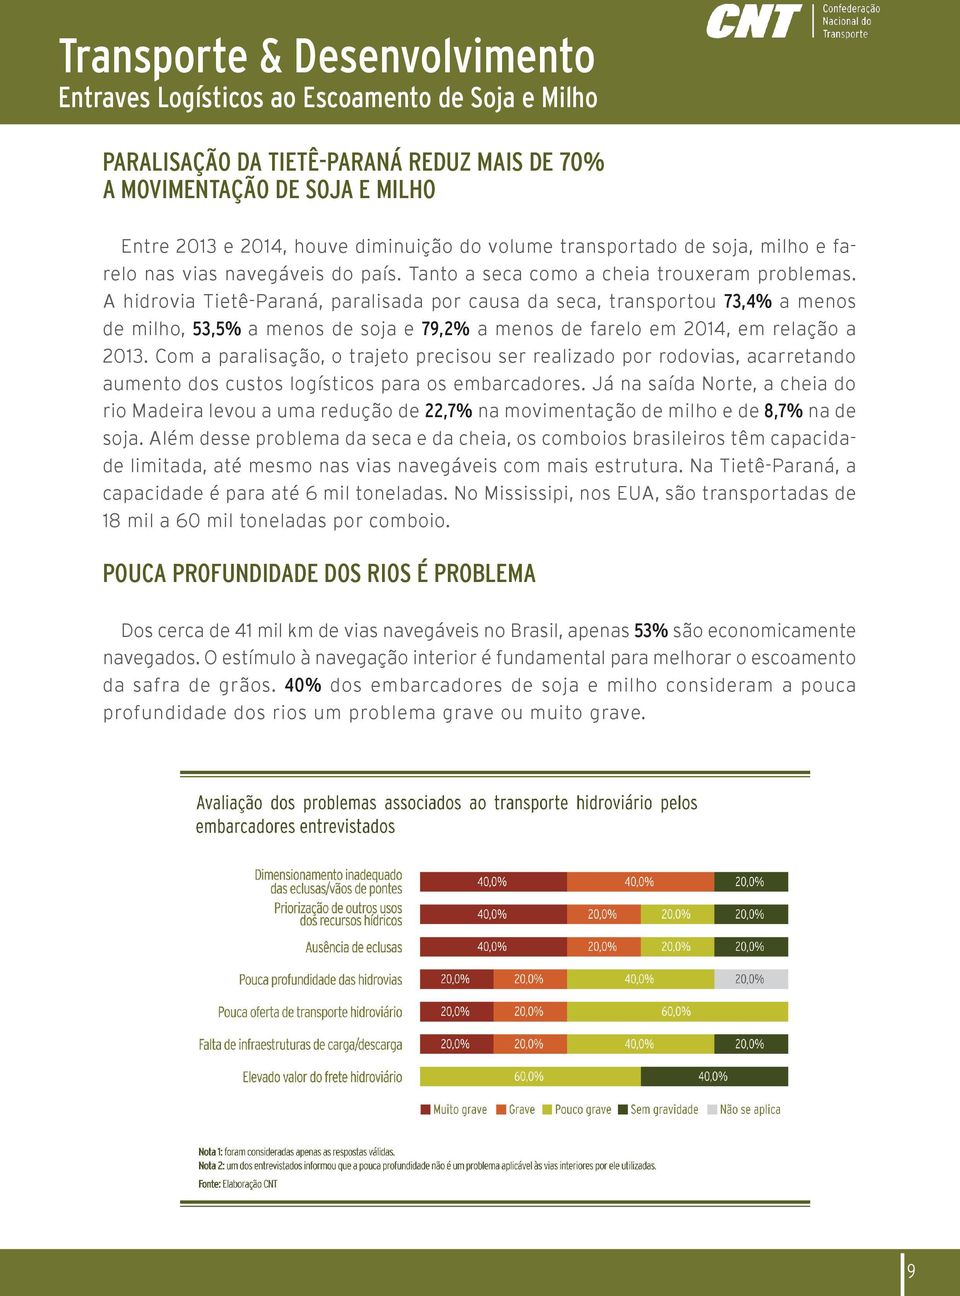 A hidrovia Tietê-Paraná, paralisada por causa da seca, transportou 73,4% a menos de milho, 53,5% a menos de soja e 79,2% a menos de farelo em 2014, em relação a 2013.